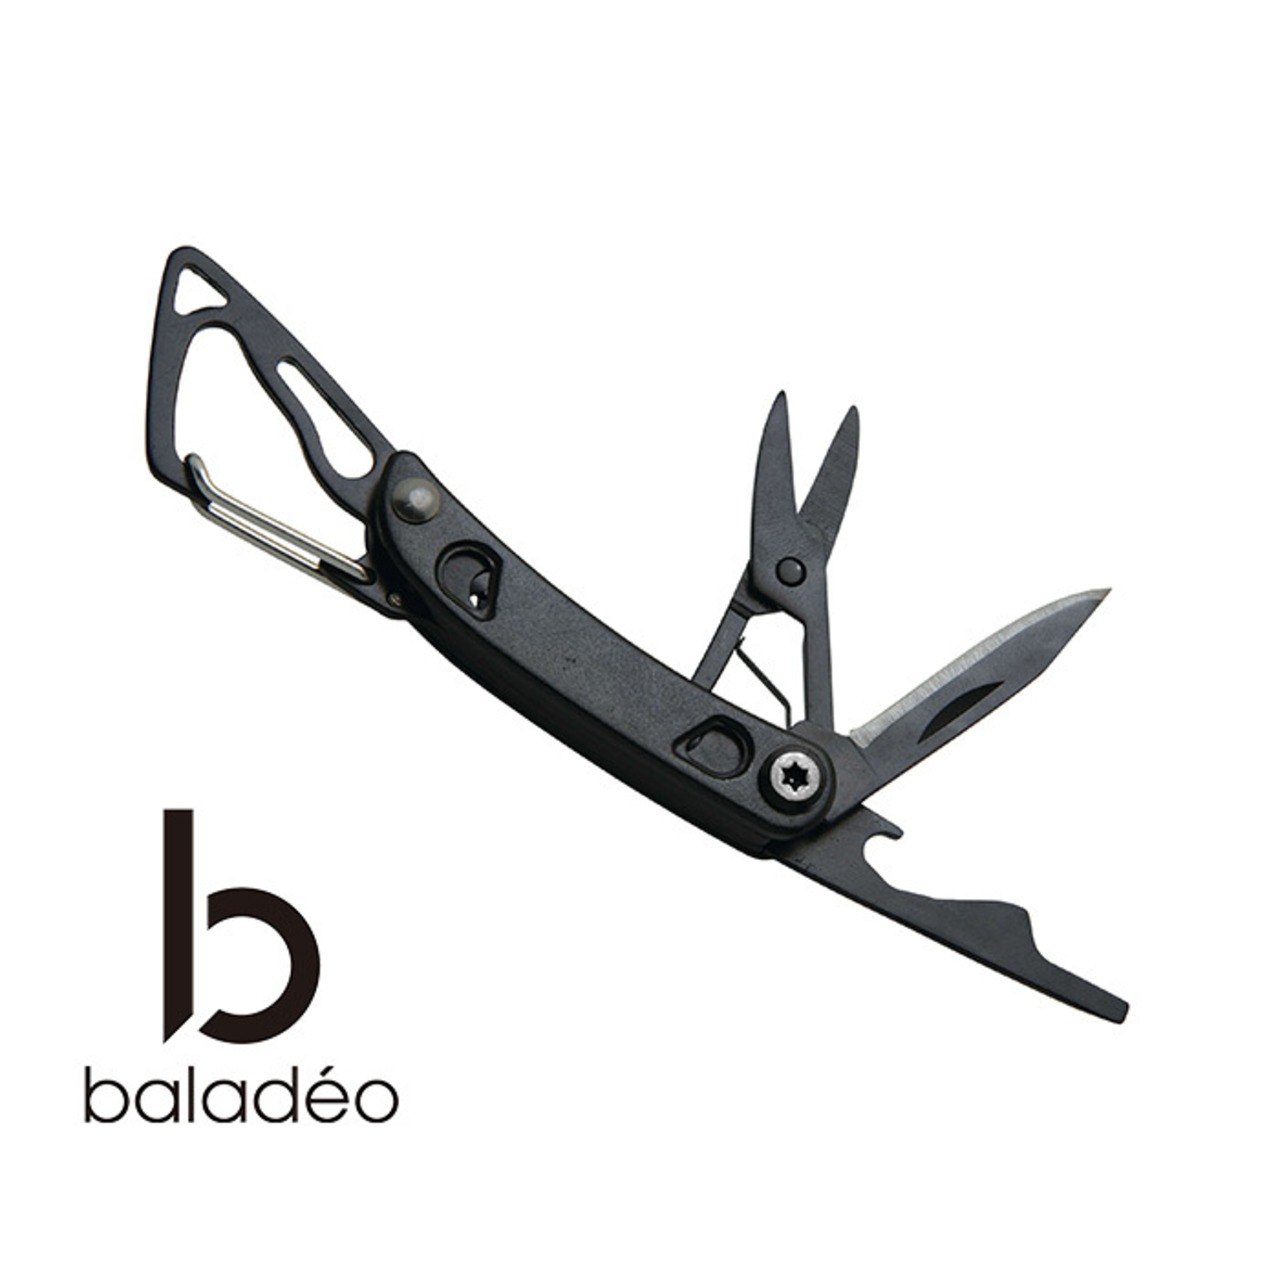 baladeo(バラデオ) Mini-tool Tech bd-0205